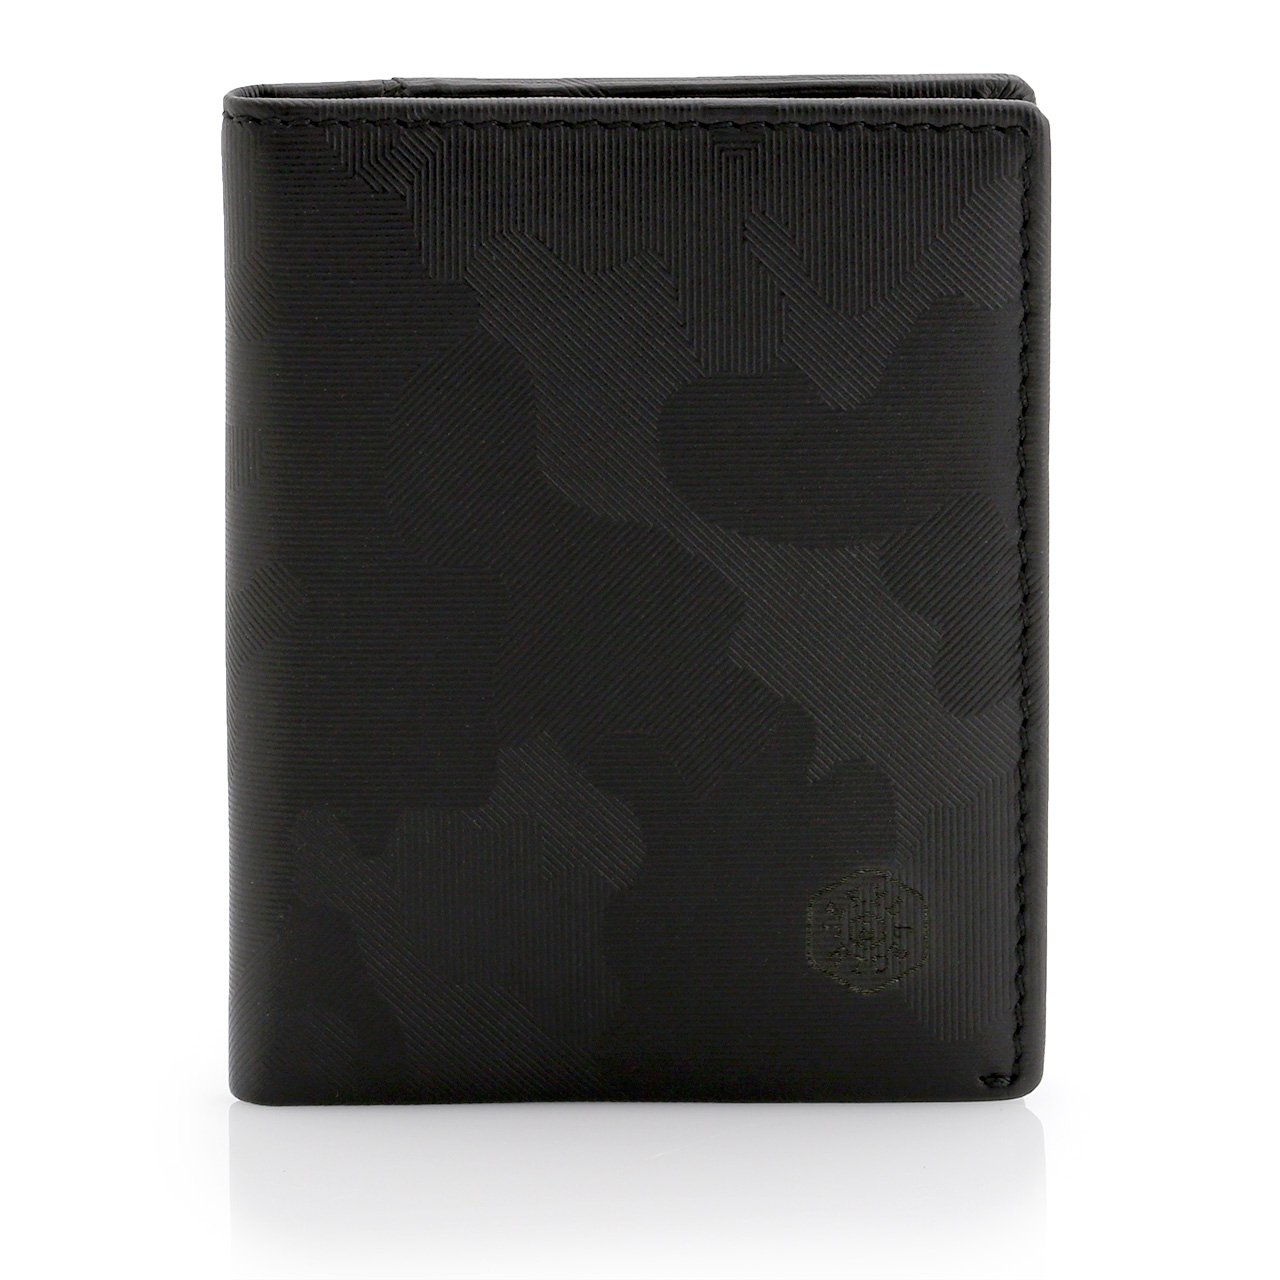 Brown Leather Wallet Slim Card Slide Wallet Tan RFID Secure by Jekyll & Hide